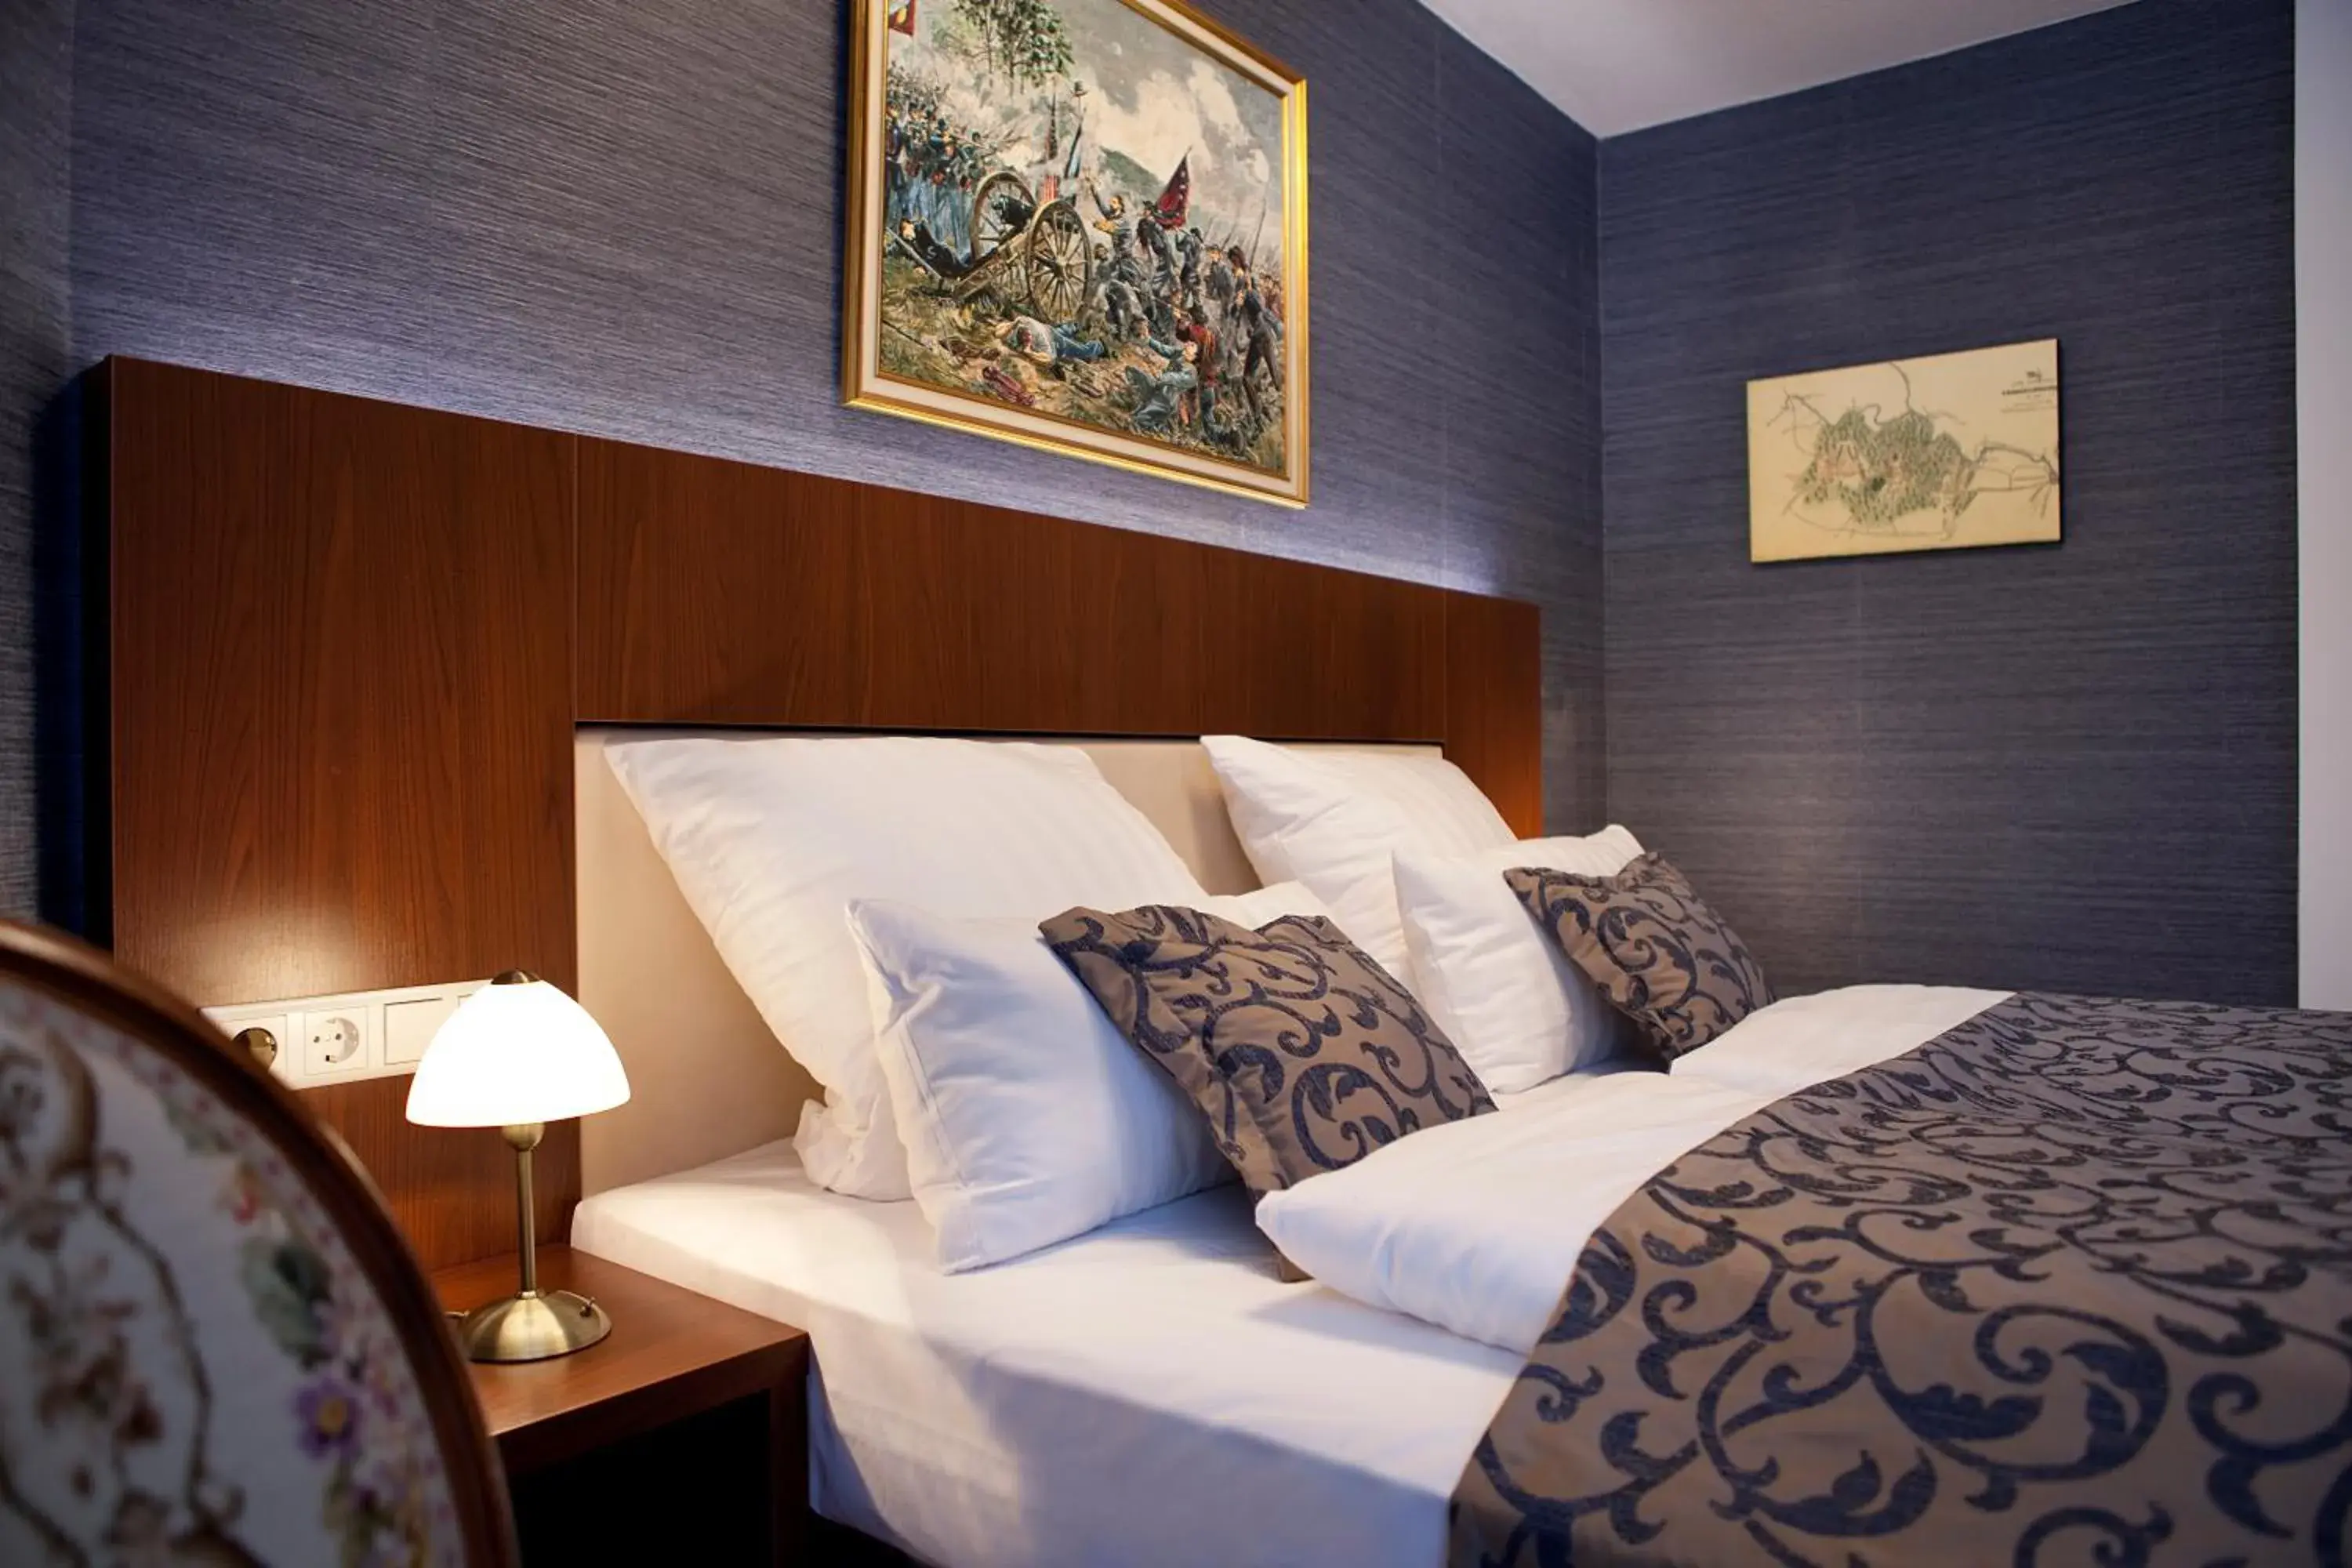 Bed, Room Photo in Fini-Resort Badenweiler